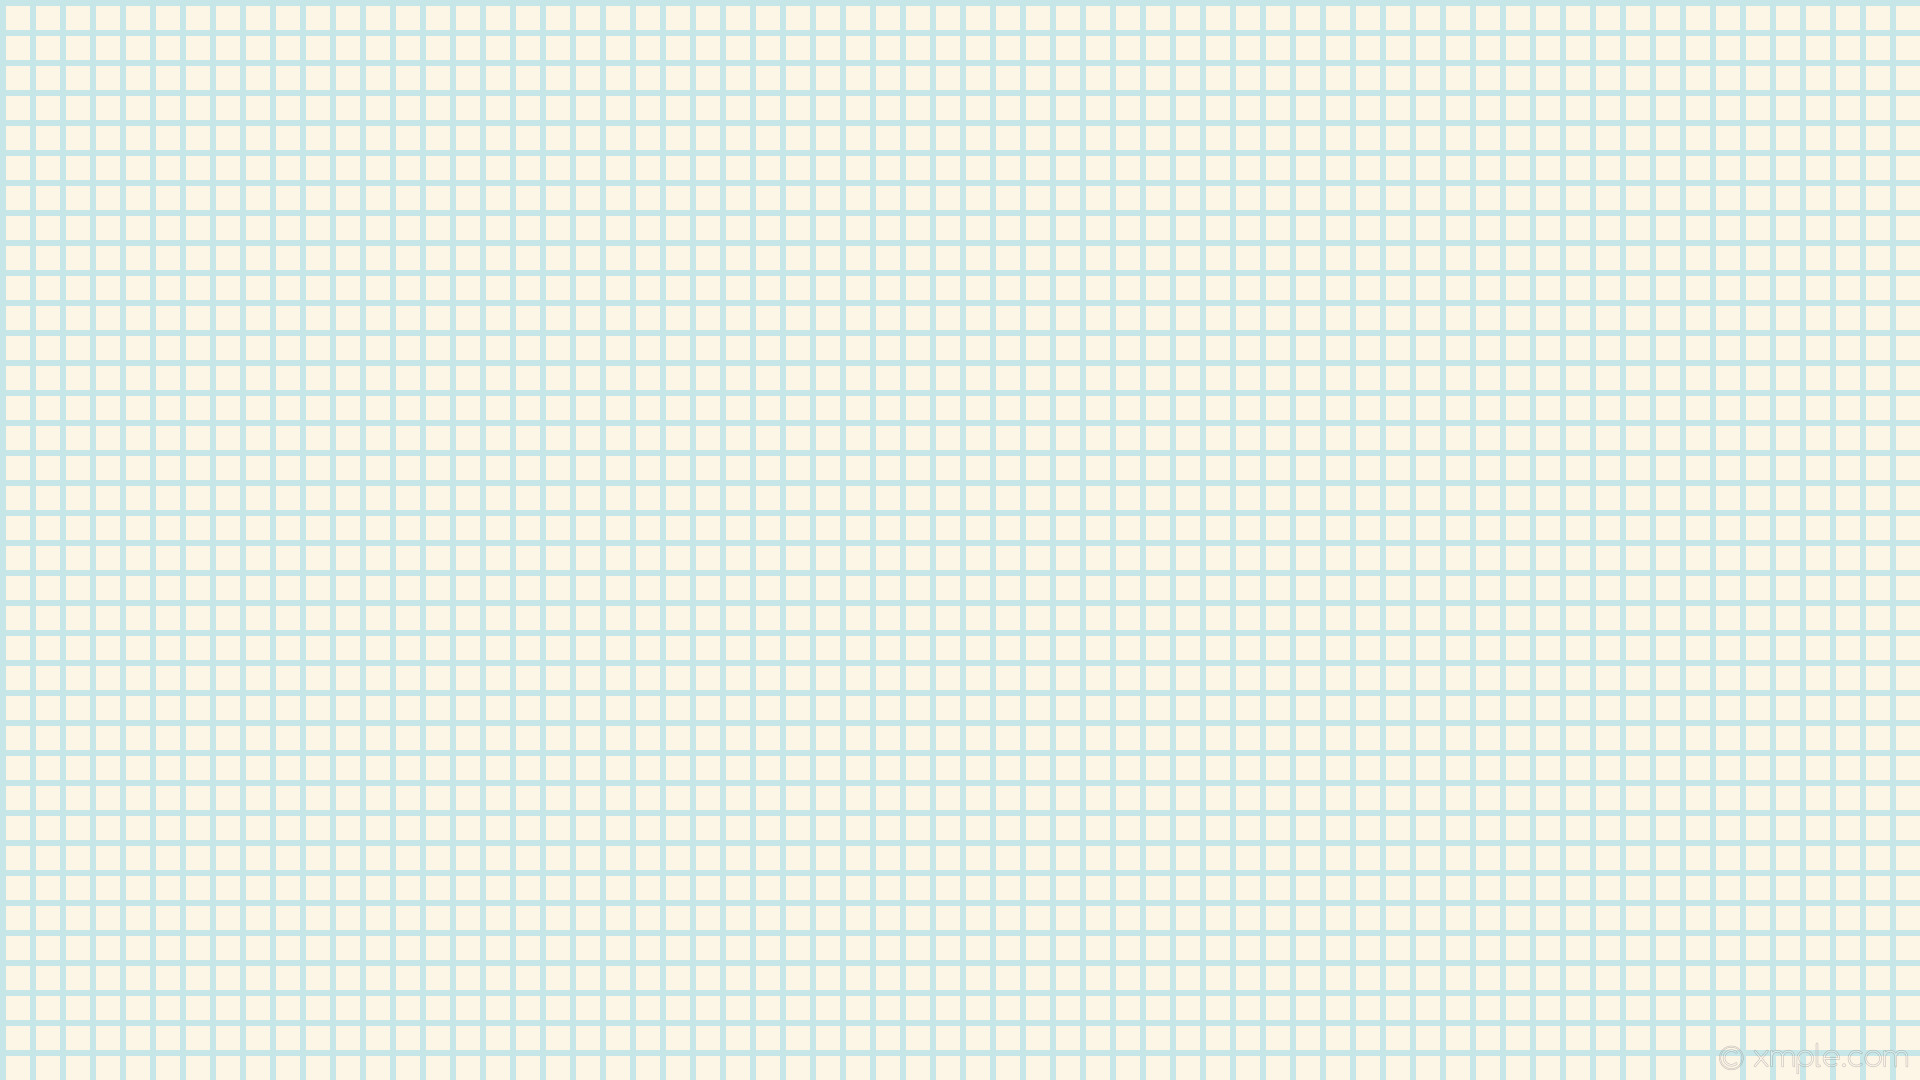 1920x1080 wallpaper graph paper grid white blue old lace powder blue #fdf5e6 #b0e0e6  0Â°